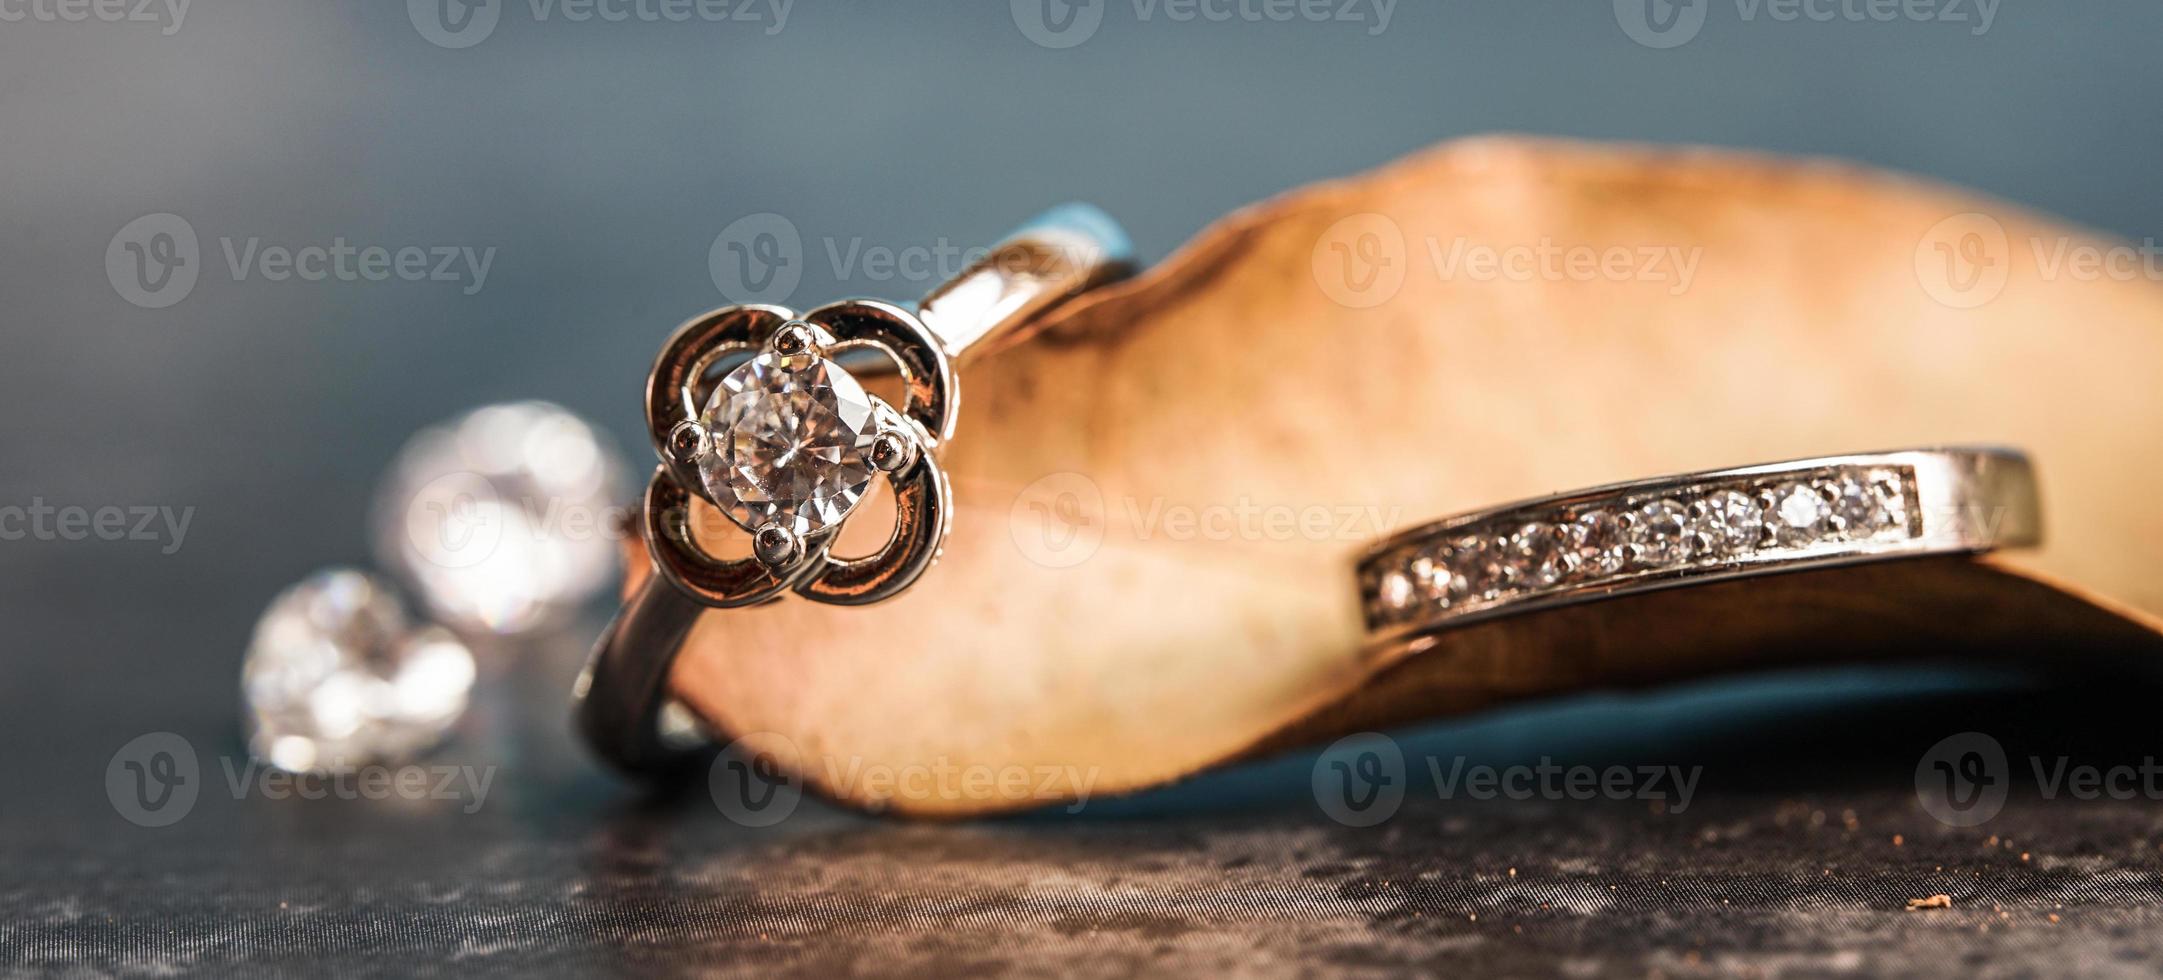 primo piano di un anello di fidanzamento con diamante posto su una foglia. concetto di amore e matrimonio. foto